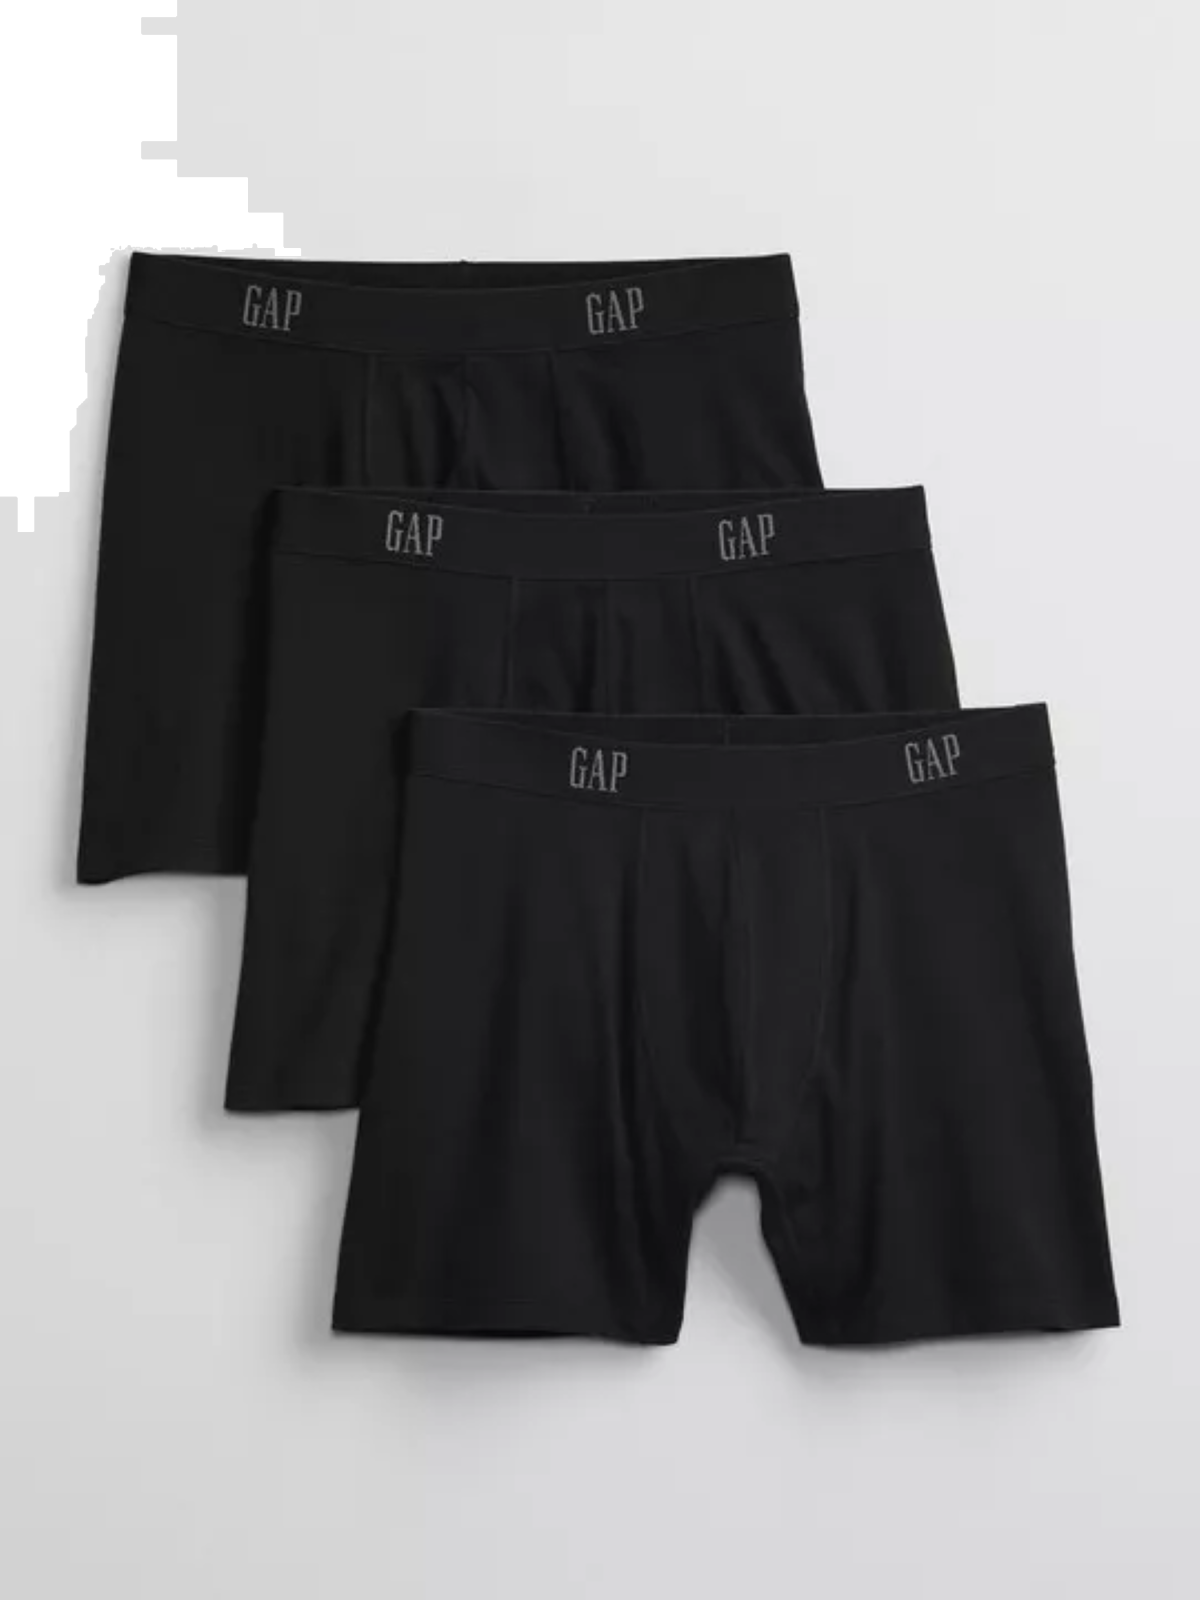  מארז 3 תחתוני בוקסר עם לוגו / גברים של GAP